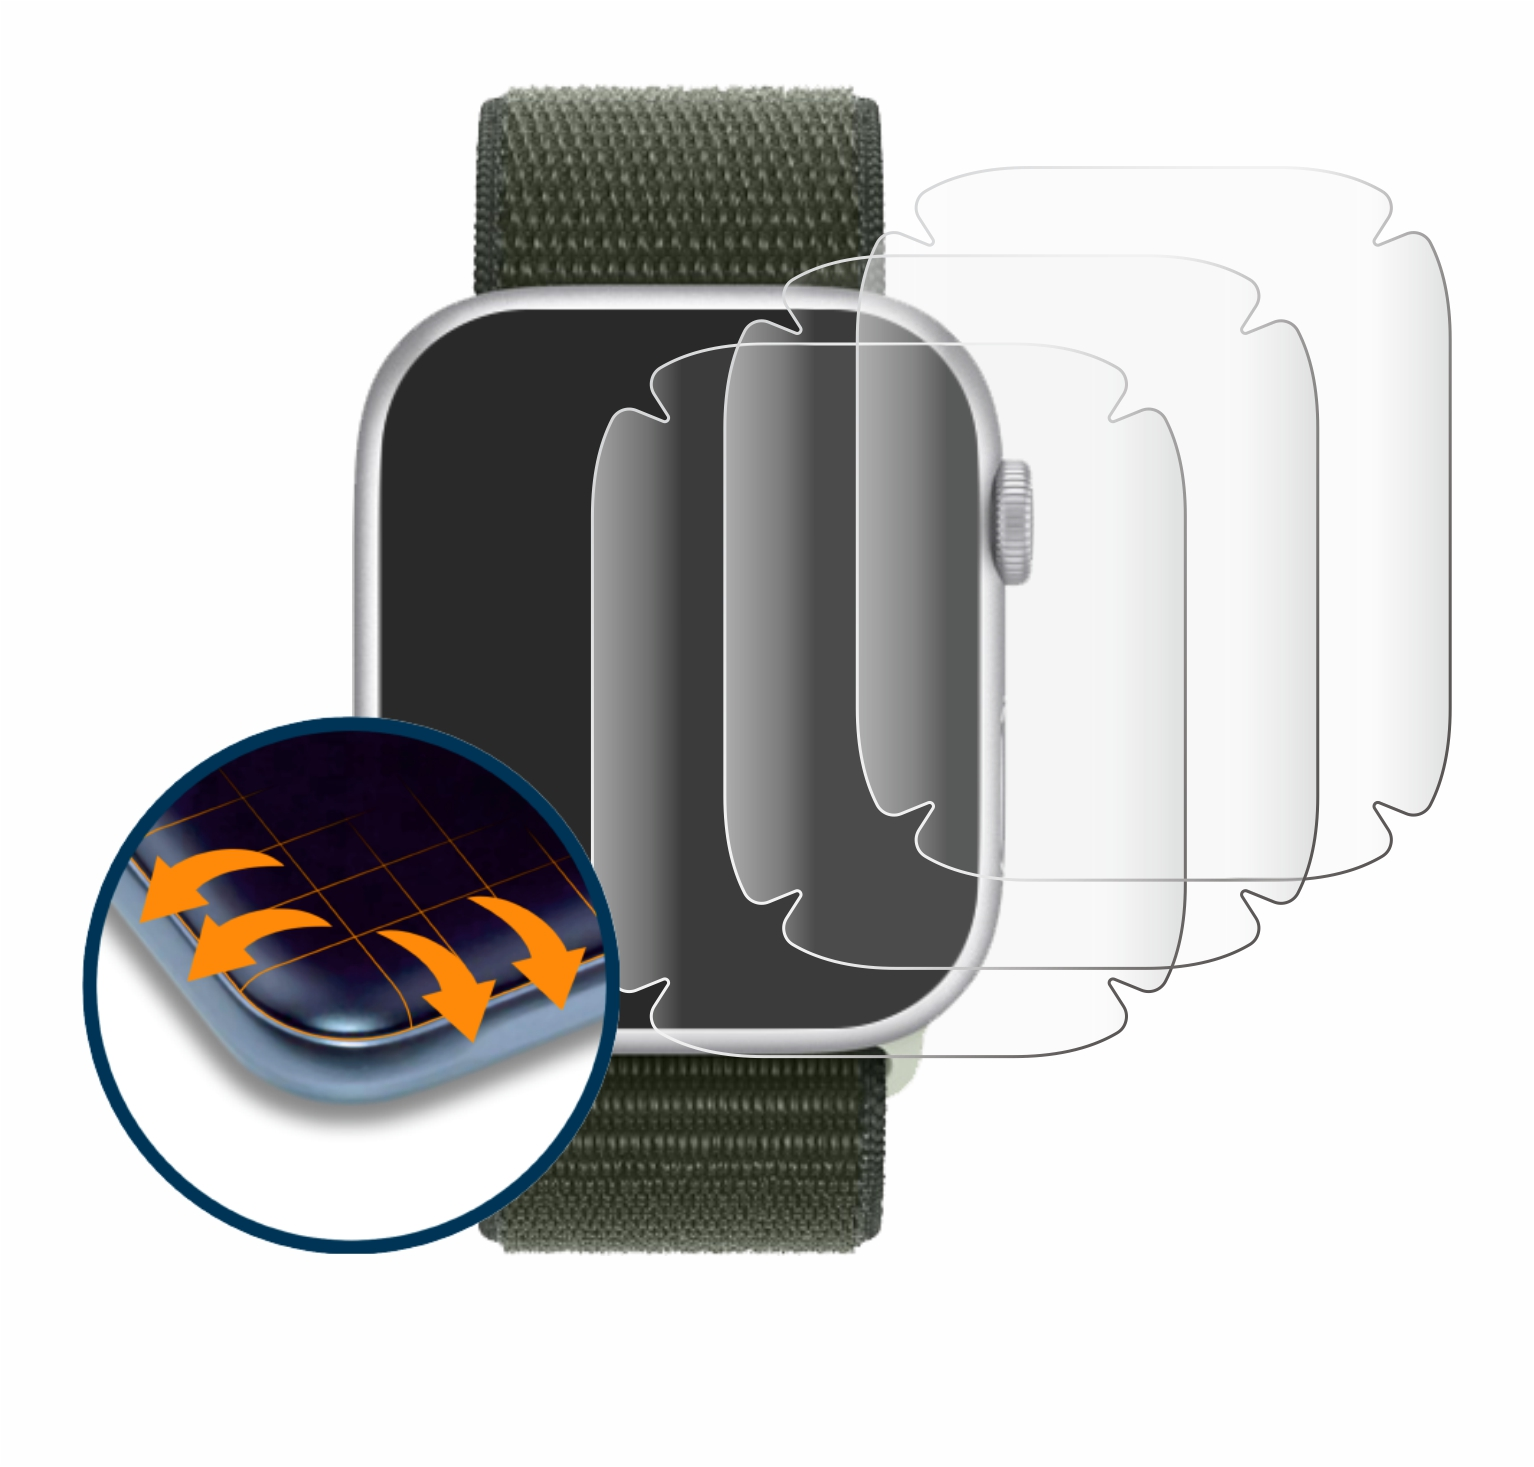 SAVVIES 4x Flex (41 Series Watch 9 Full-Cover Schutzfolie(für Curved mm)) 3D Apple